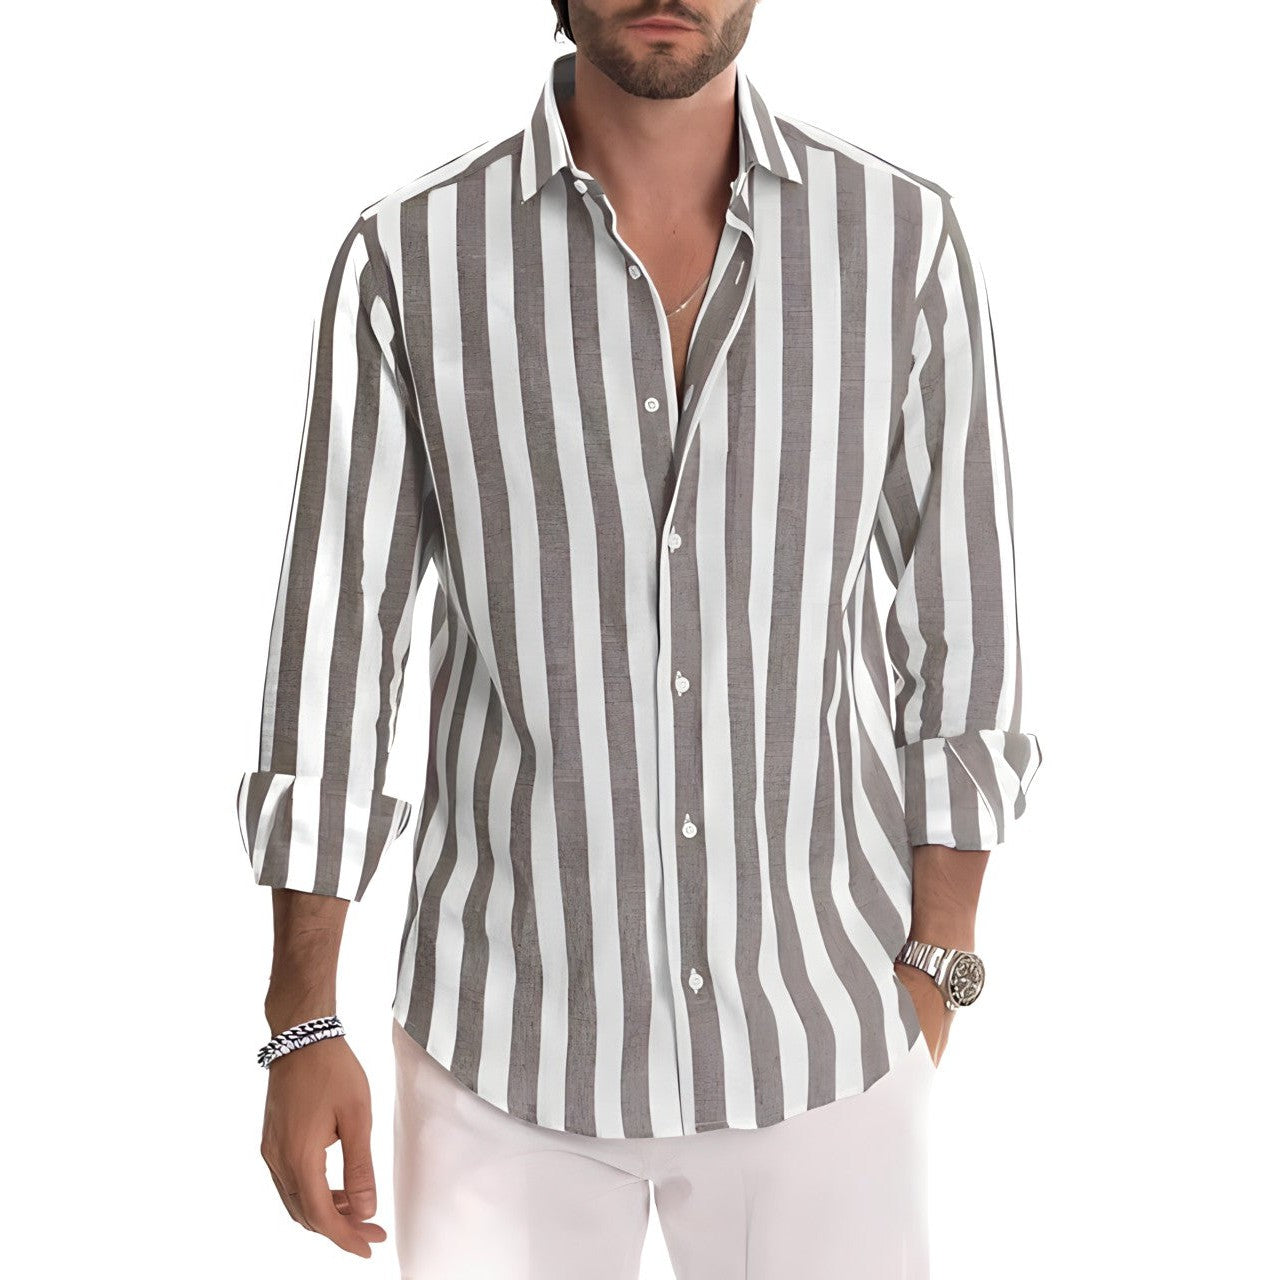 Nickos men's striped polo shirt